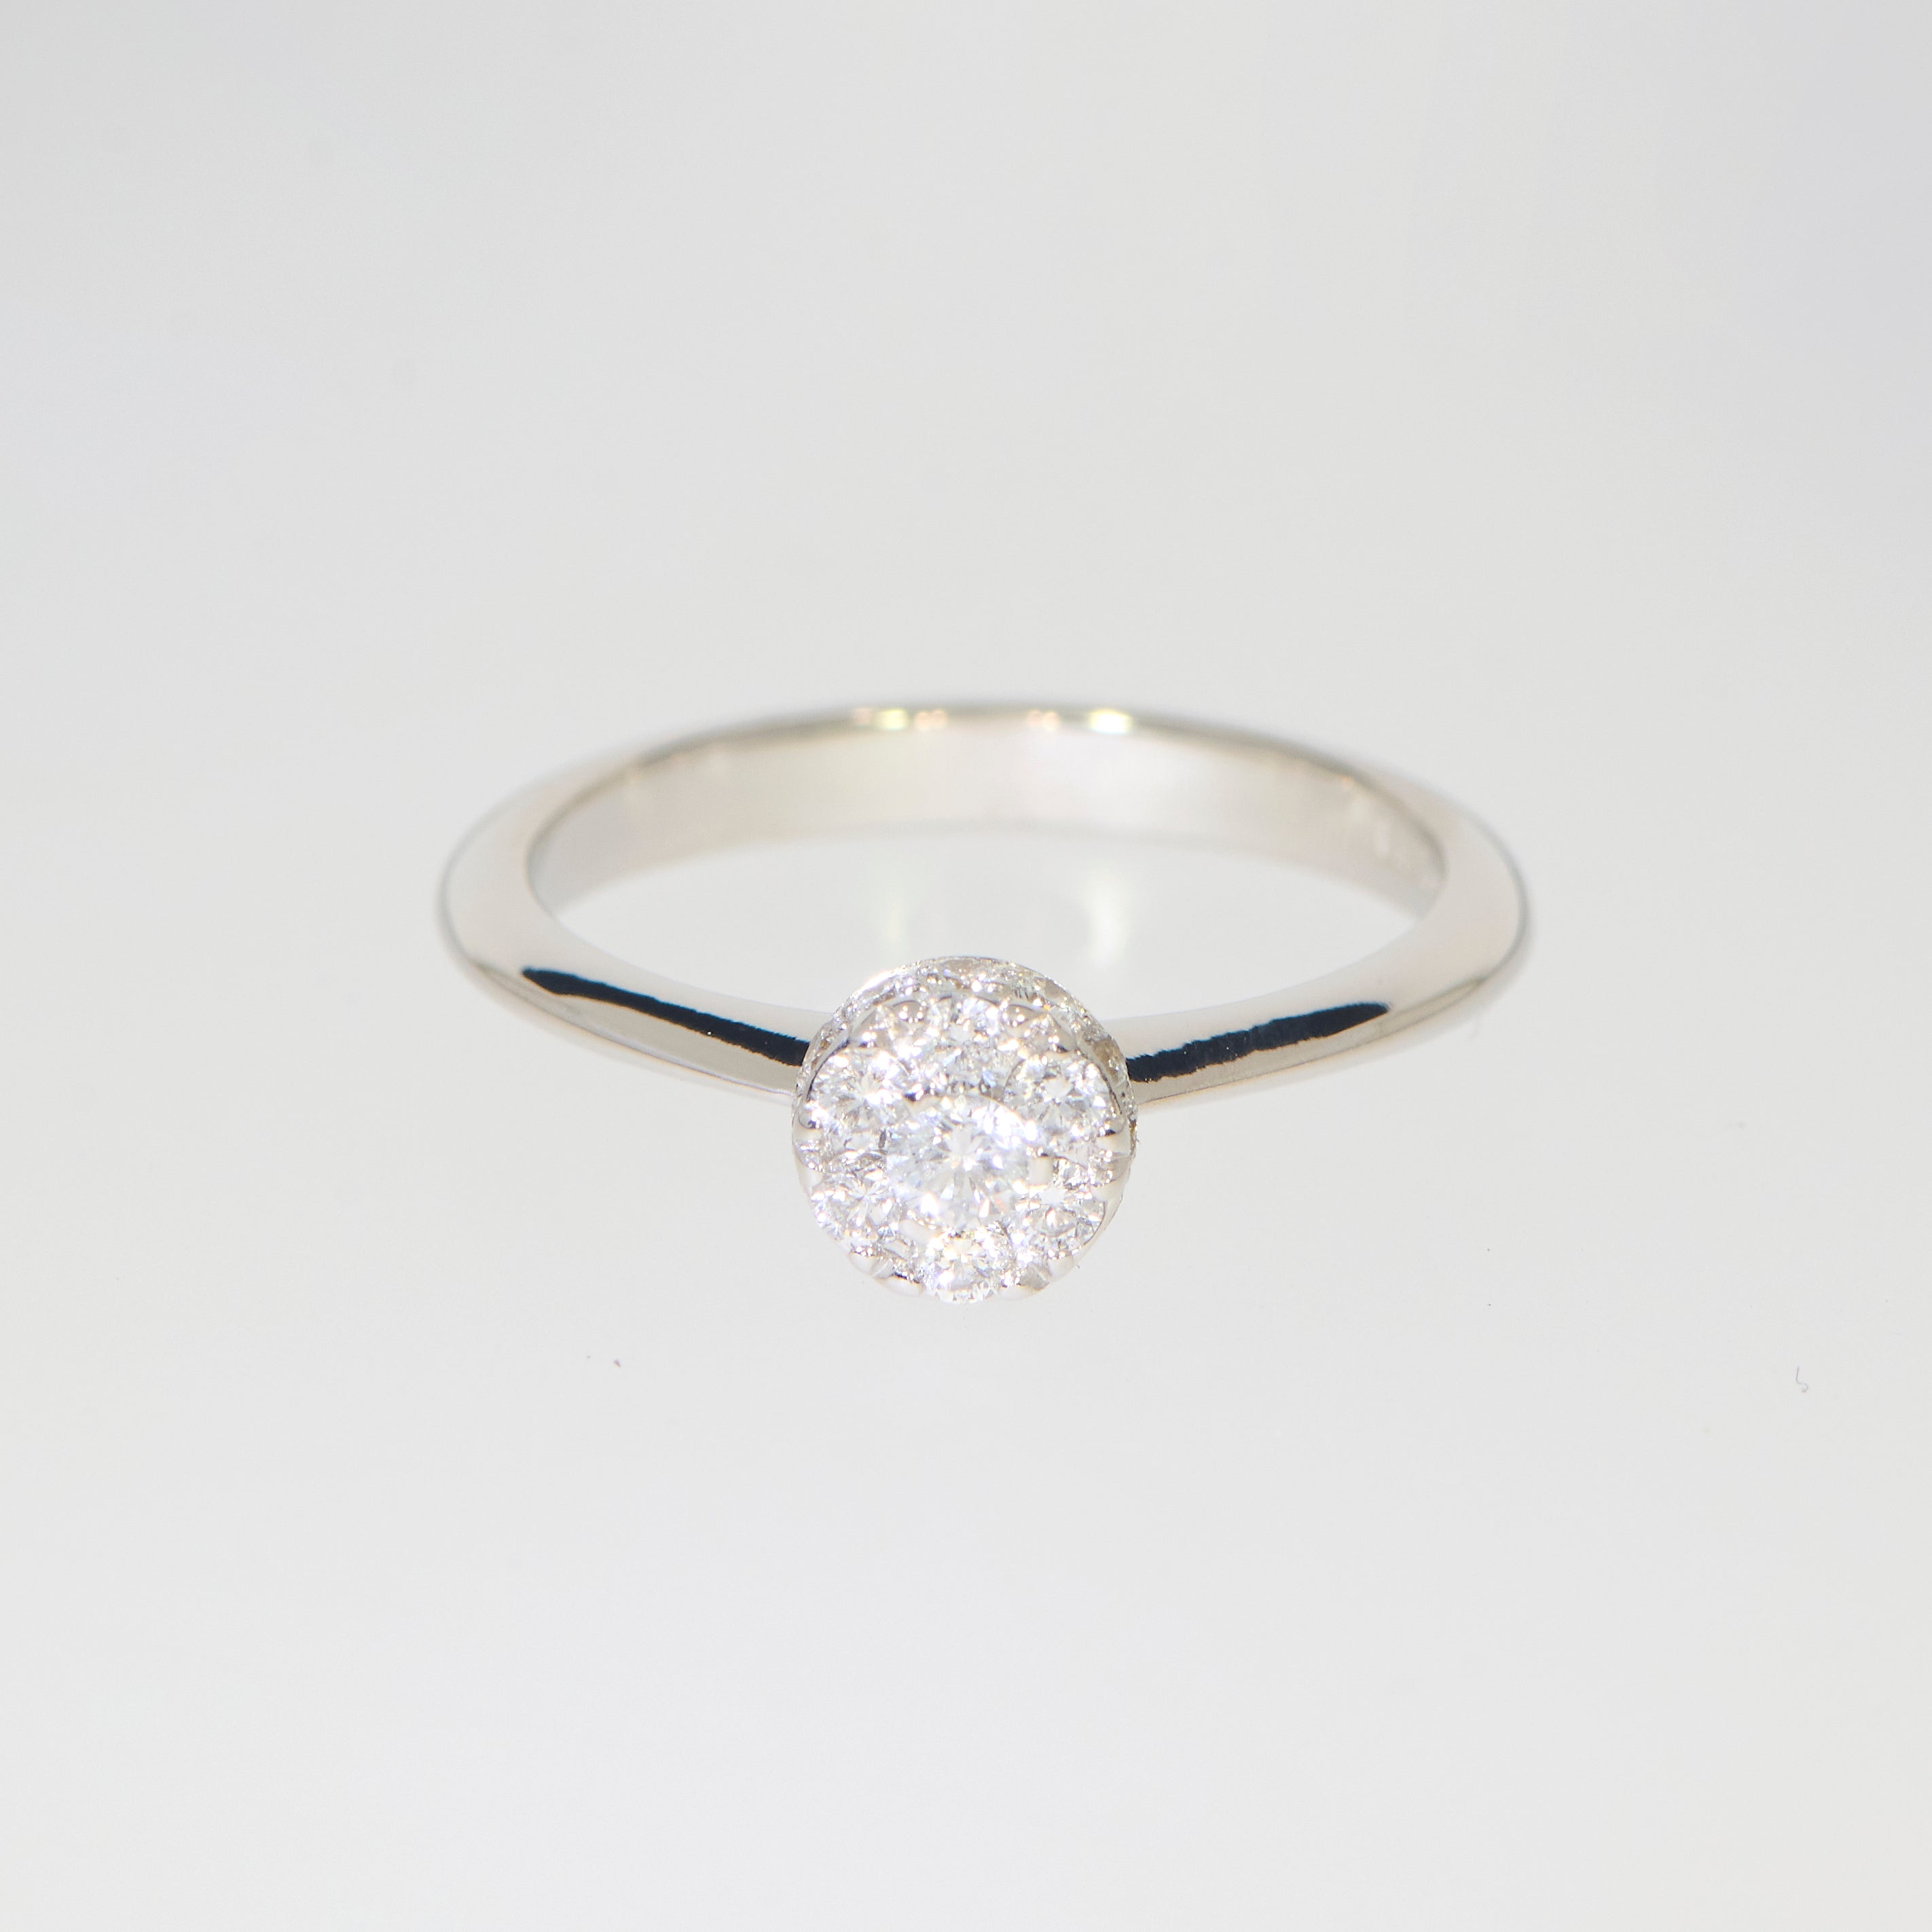 Brugt ring i 18kt hvidguld med diamanter